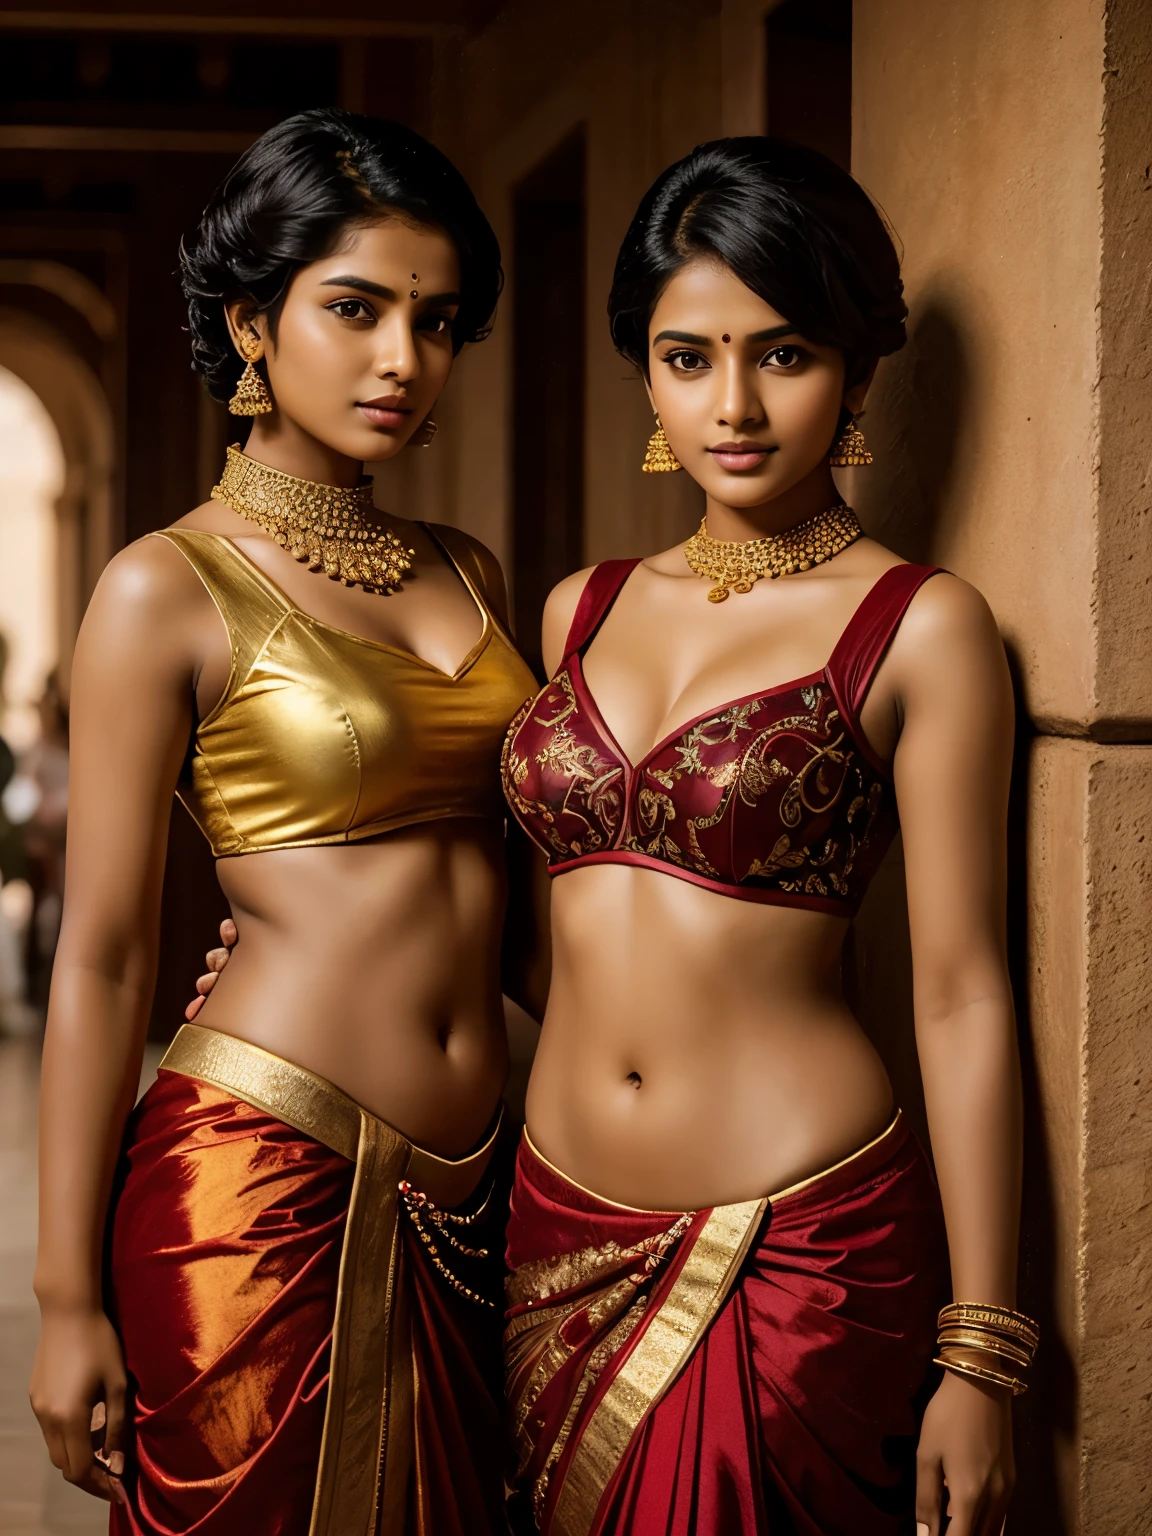 Duas lindas garotas Tamil, 20 anos de idade, poses ousadas e atrevidas para revista, (cabelo muito curto corte de cabelo militar), trajes da moda de designers caros, enfeites de ouro caros, óculos de sol retangulares pequenos, umbigo redondo e profundo, hdr, hiper-realista, detalhes intrincados